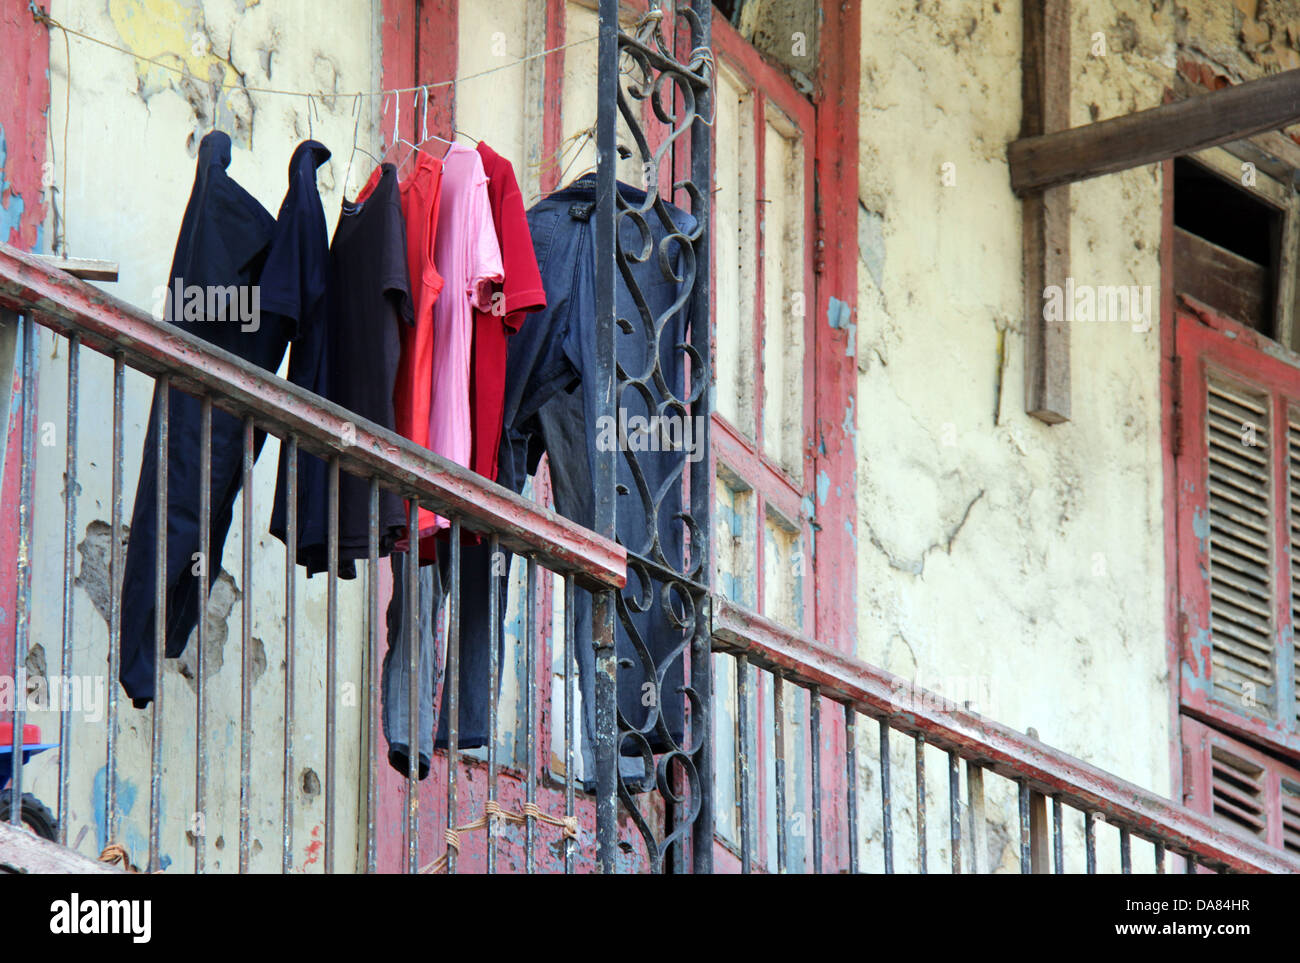 Certains vêtements séchant sur un balcon d'une pauvre maison dans la ville de Panama. Banque D'Images